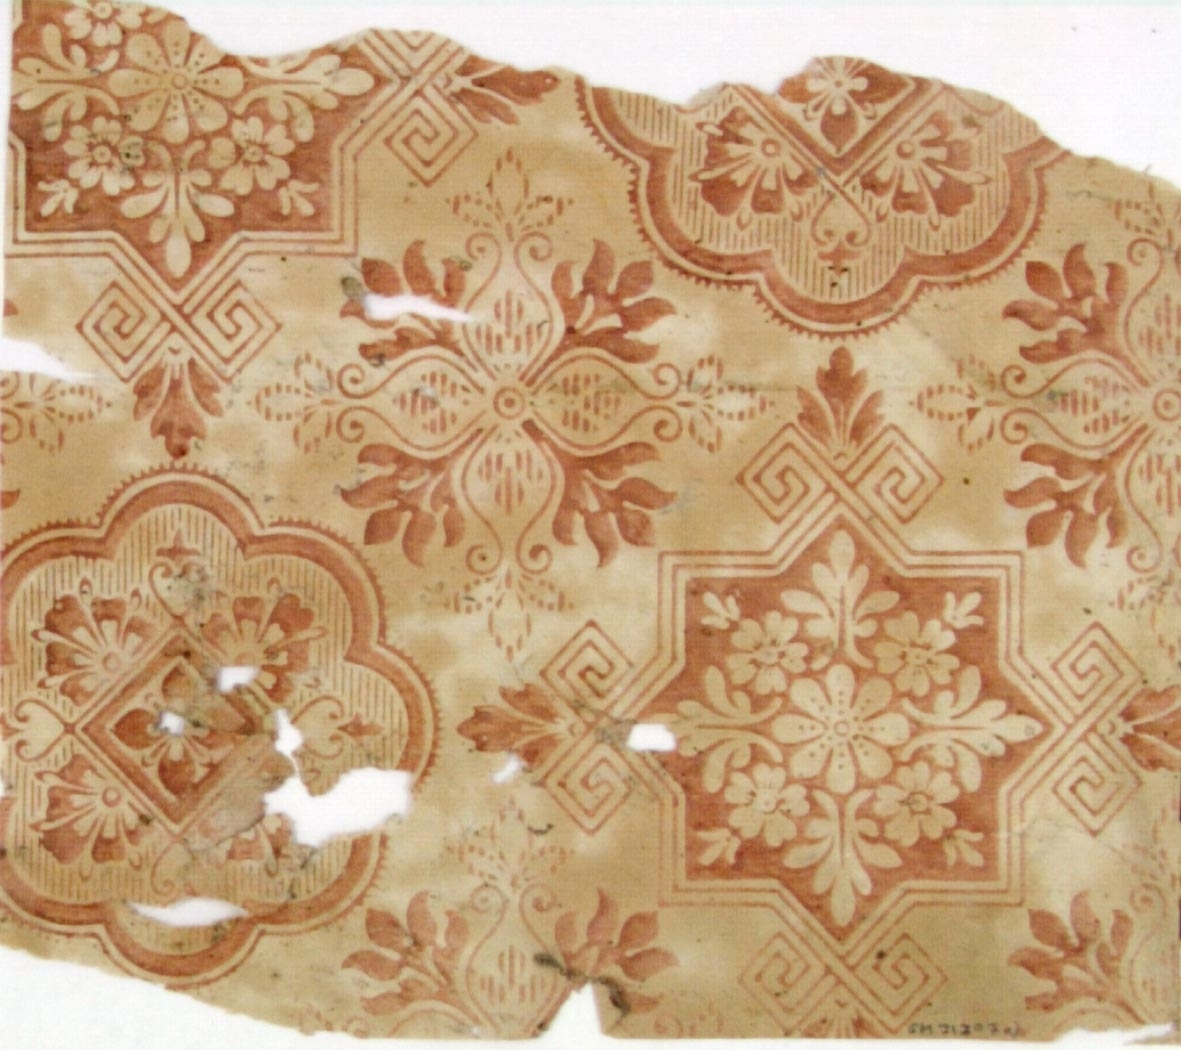 Kakelimiterande mönster i rostbrunt på ofärgat papper.